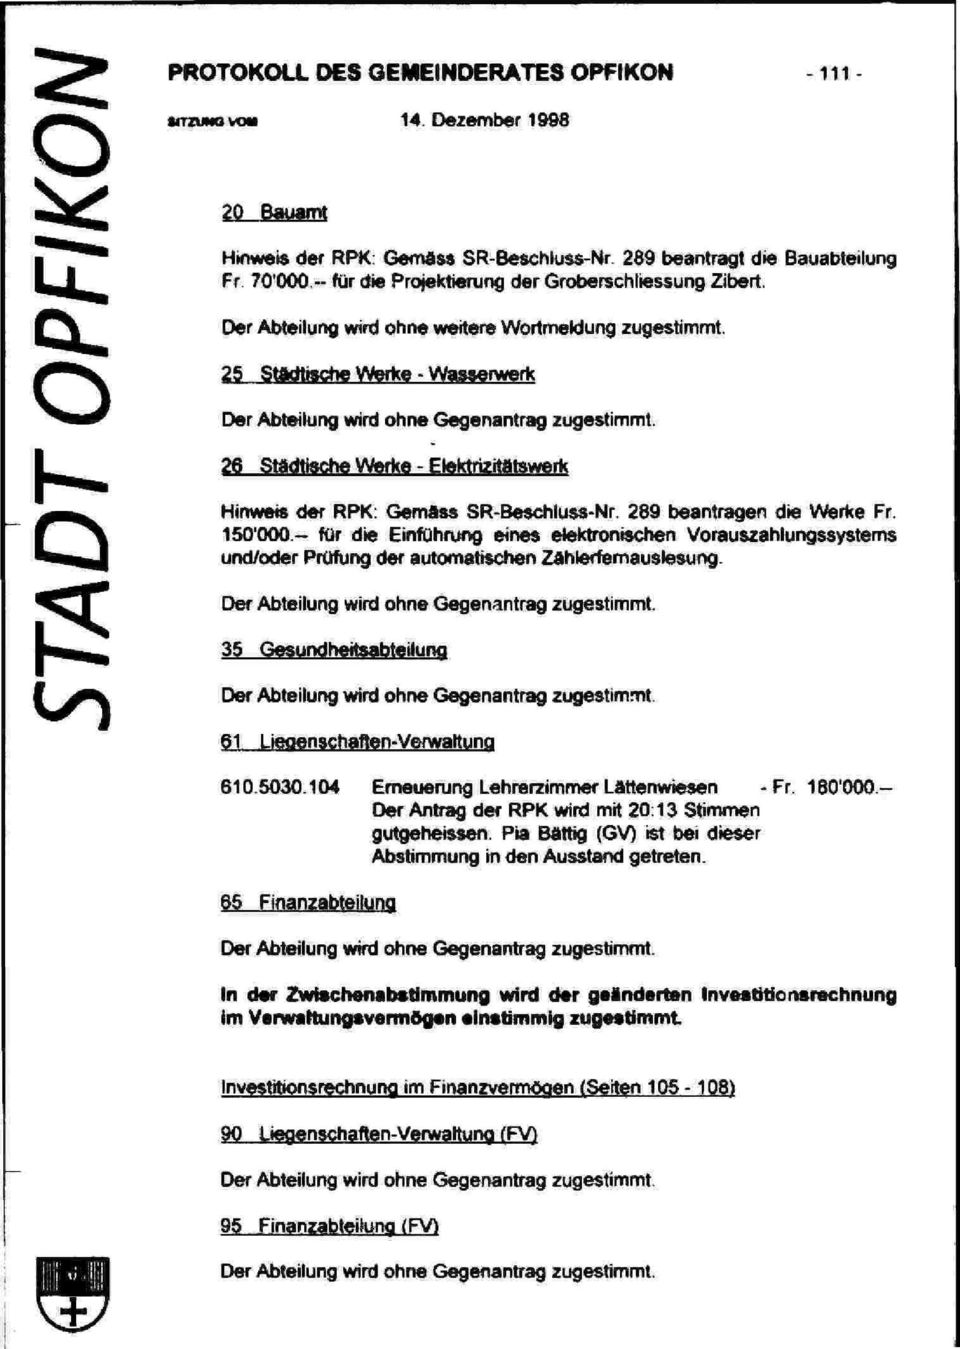 26 Städtische Werke - Elektrizitätswerk Q Hinweis der RPK: Gemass SR-Beschiuss-Nr. 289 beantragen die Werke Fr. 150'QOQ.